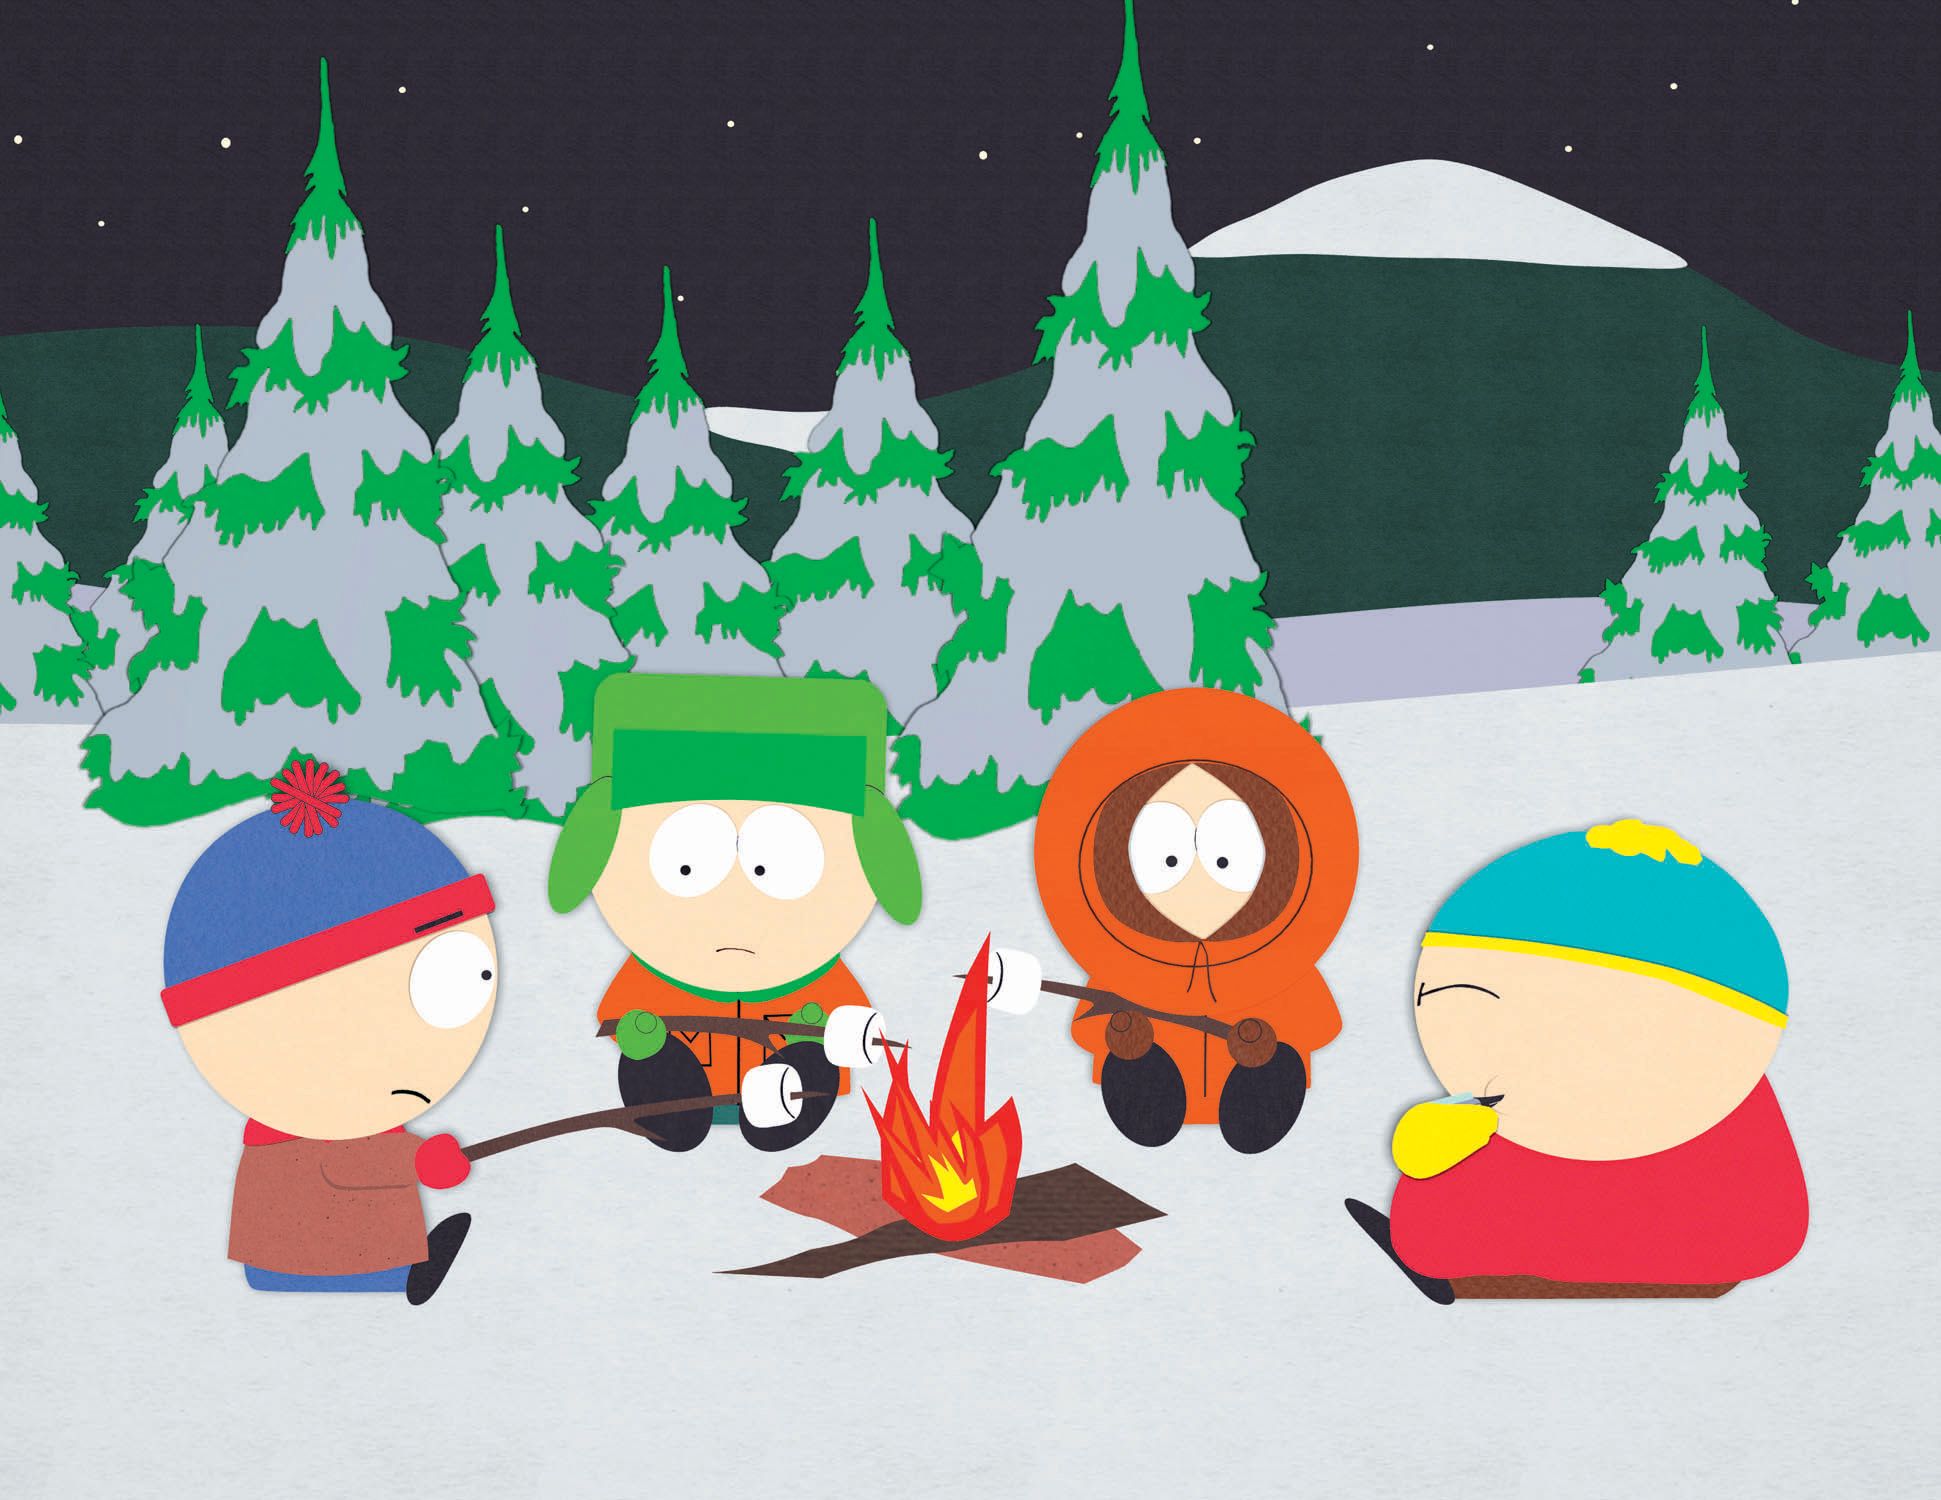 South Park boys roast marshmallows over a campfire